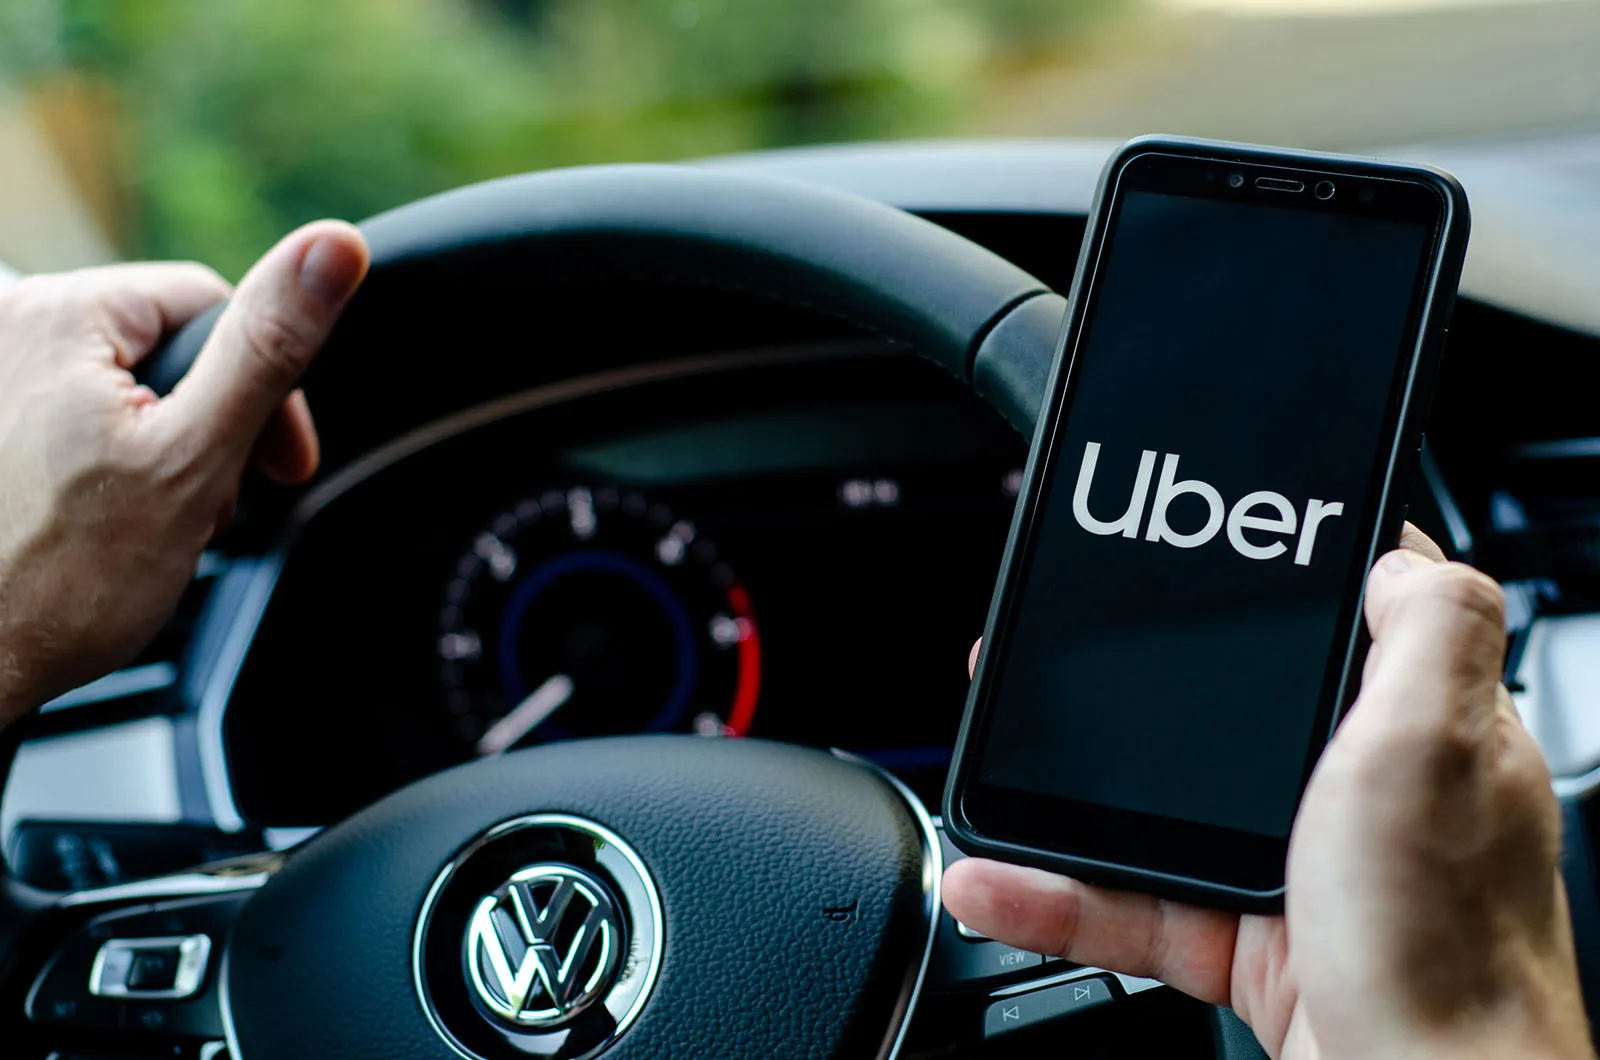 نوآوری در کسب و کار با تاکسی اینترنتی uber